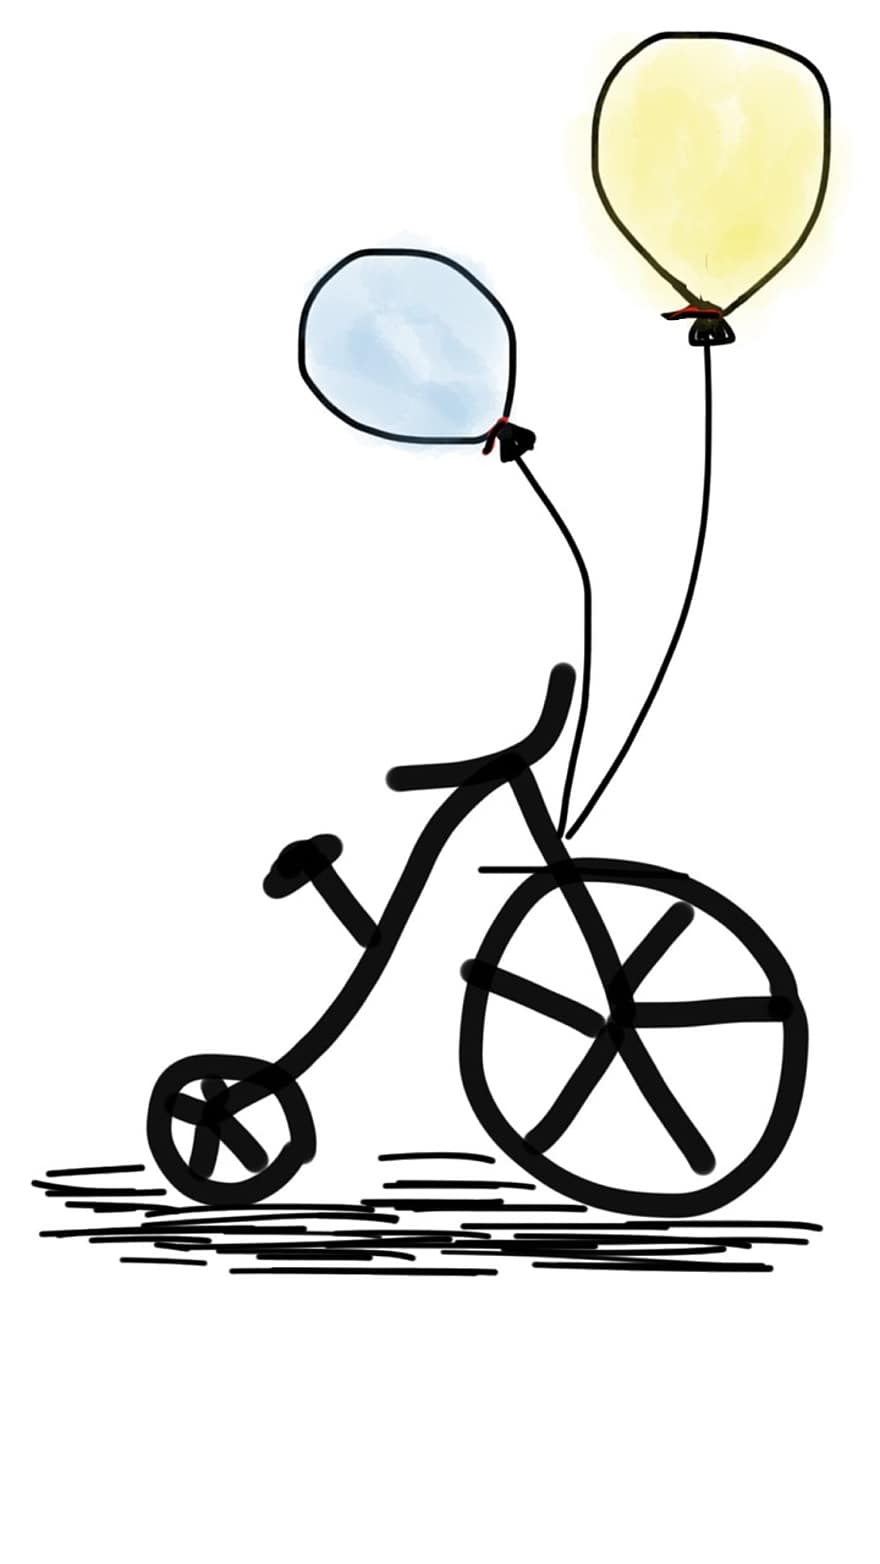 دراجة هوائية ، دراجة ، بالون ، بالون أصفر ، بالون ازرق ، أسلوب الحياة ، ركوب الدراجة ، ركوب الدراجات ، رياضة ، اركب ، مرح